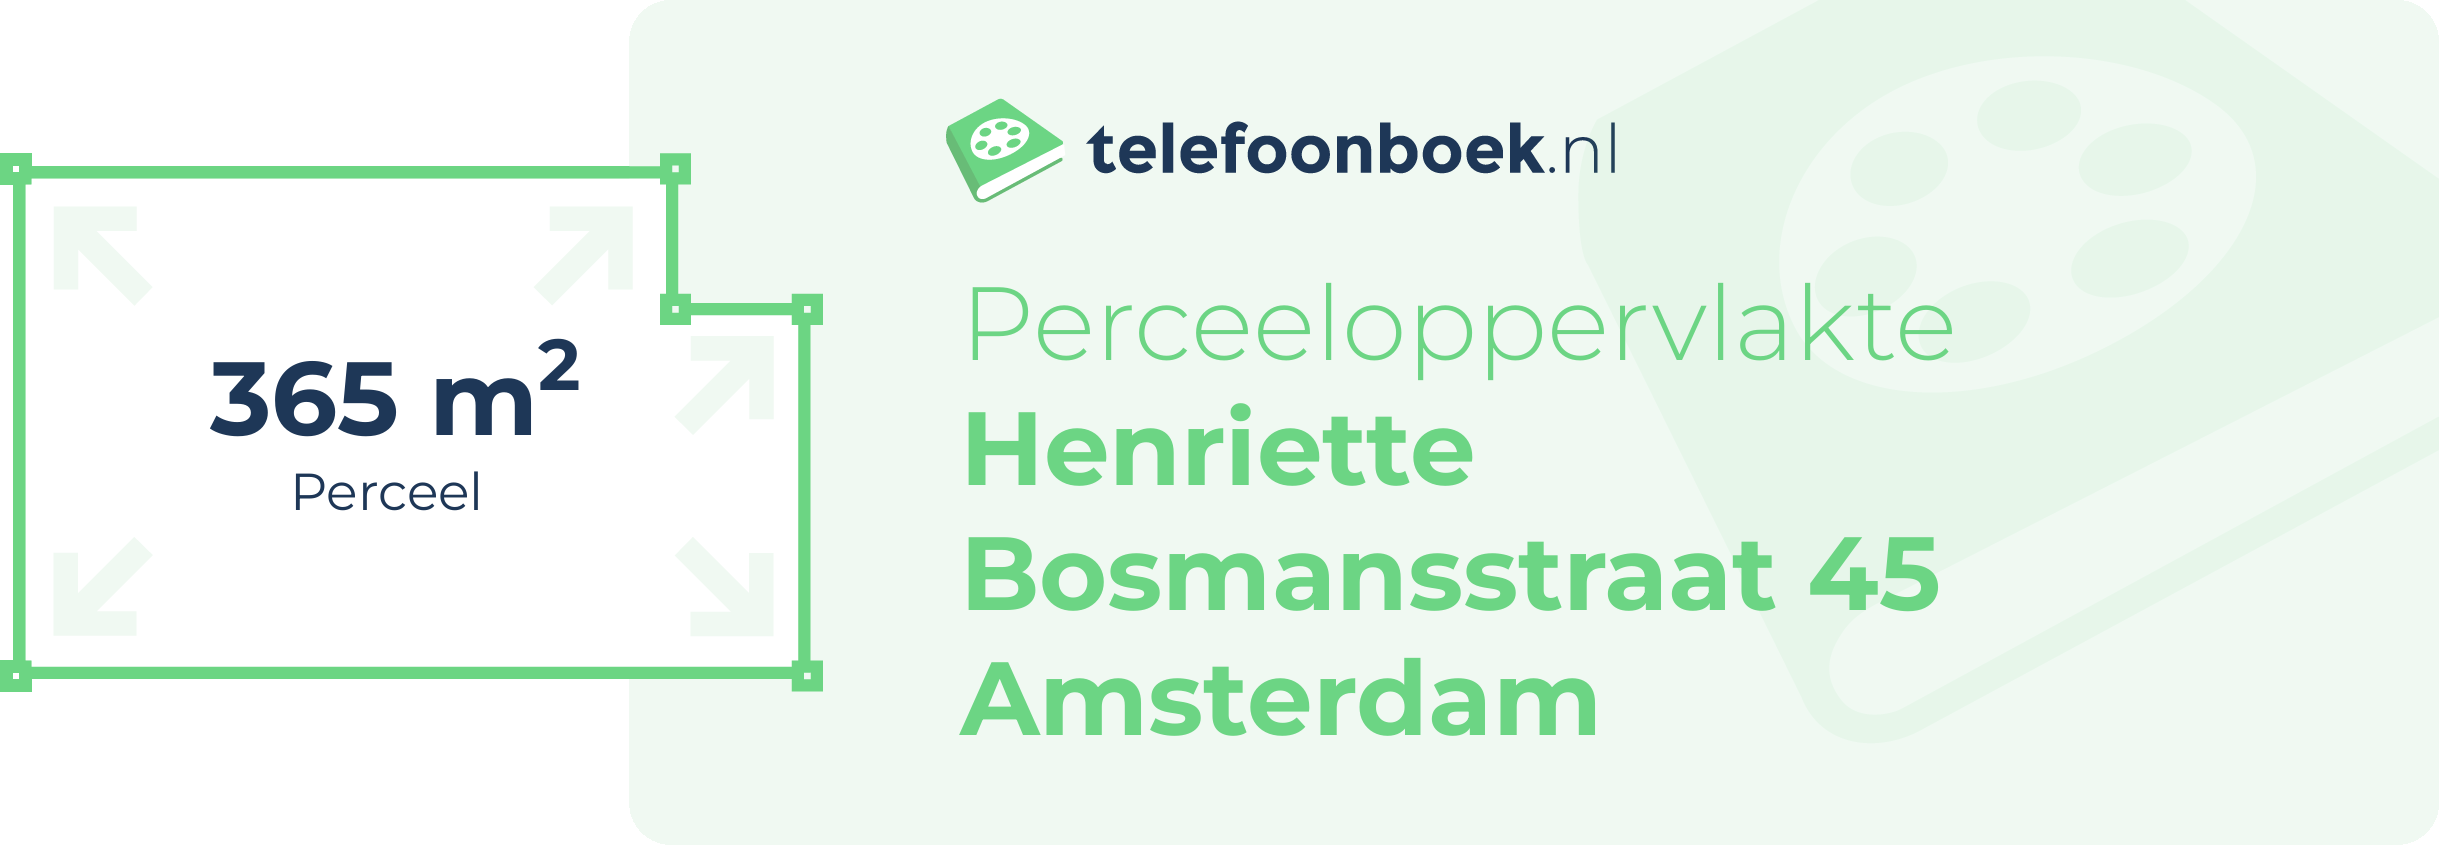 Perceeloppervlakte Henriette Bosmansstraat 45 Amsterdam